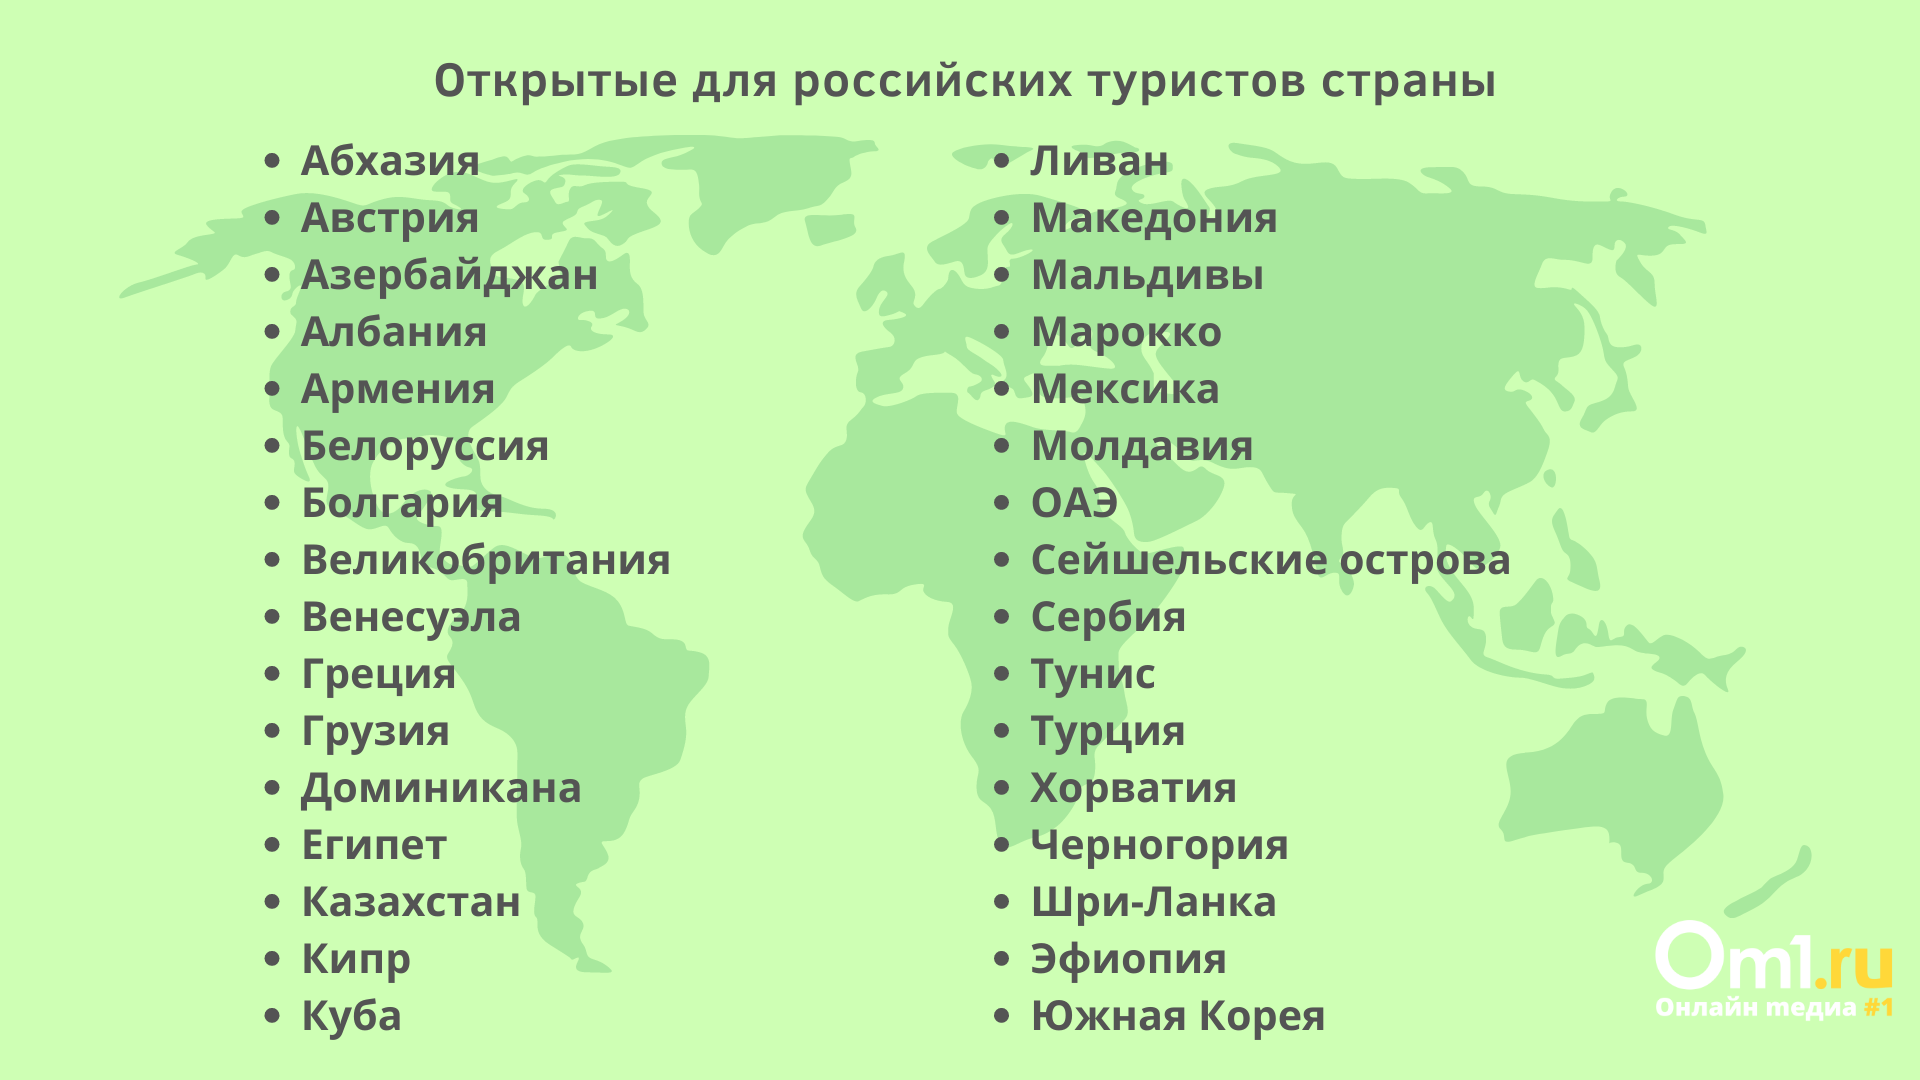 Республик 22 какие. Перечень стран открытых для туризма. Российские Республики список. Список стран для туризма. Какие страны открыты для туристов.